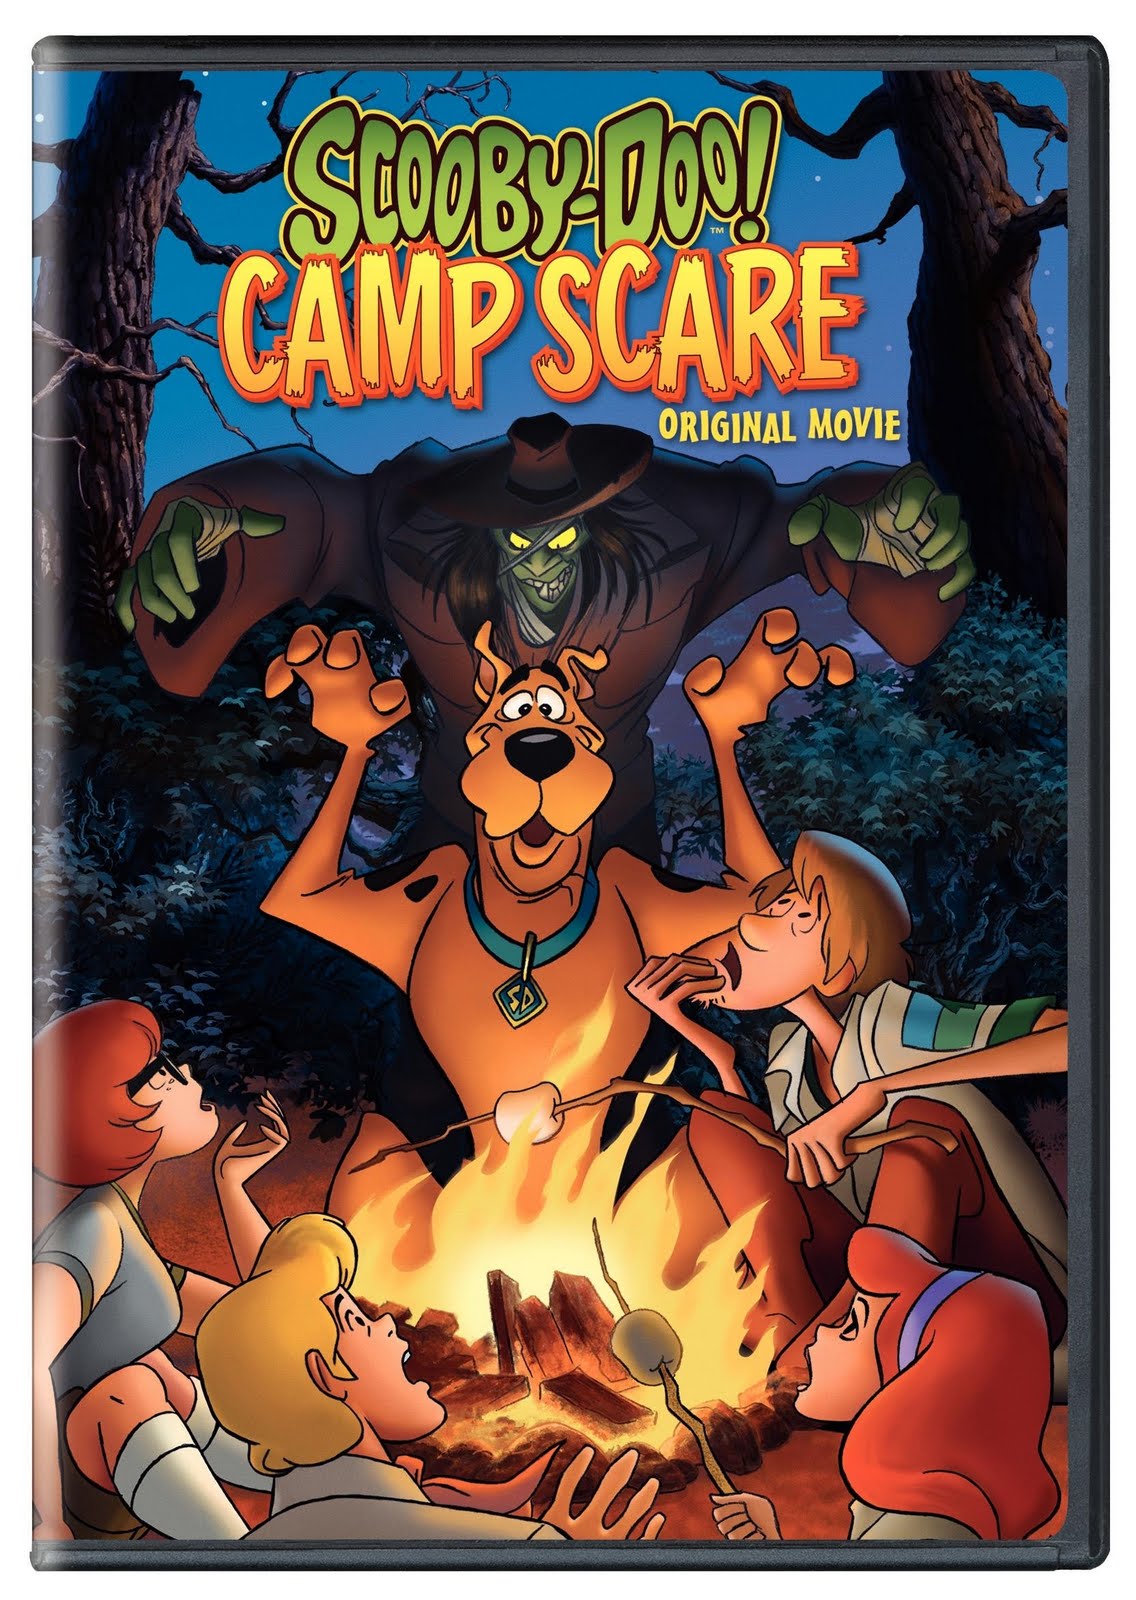 حصرياً : فيلم الانيمى والمغامرات الكوميدى الأكثر من رائع scooby doo camp scare 2010 بجوة DvdRip وعلى أكثر من سيرفر Scooby+Doo+Camp+Scare+DVD